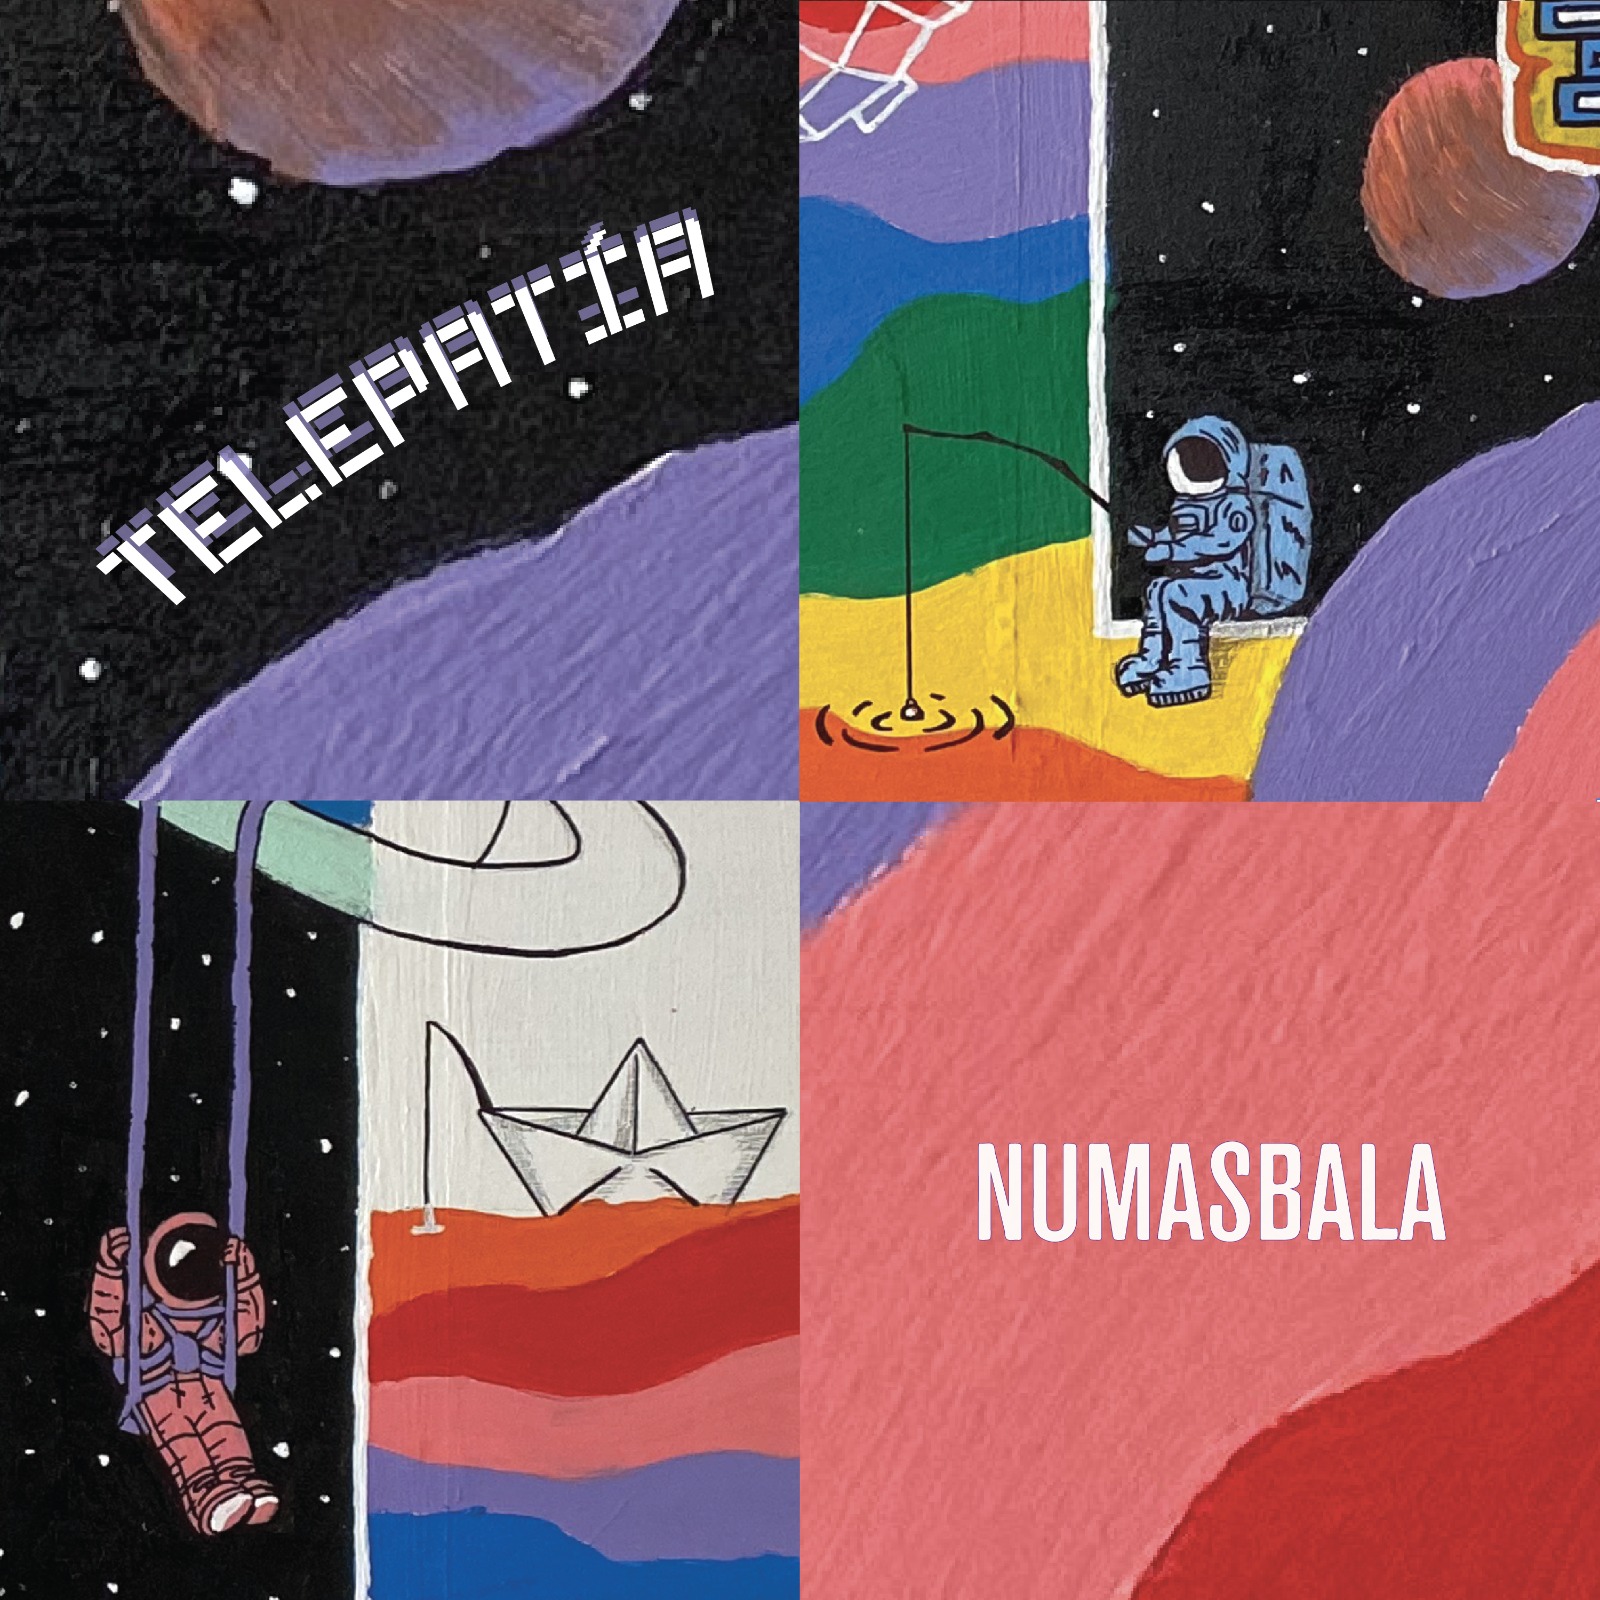 Numasbala le canta a las conexiones invisibles en ‘Telepatía’ Una canción de amor, intuición y celebración